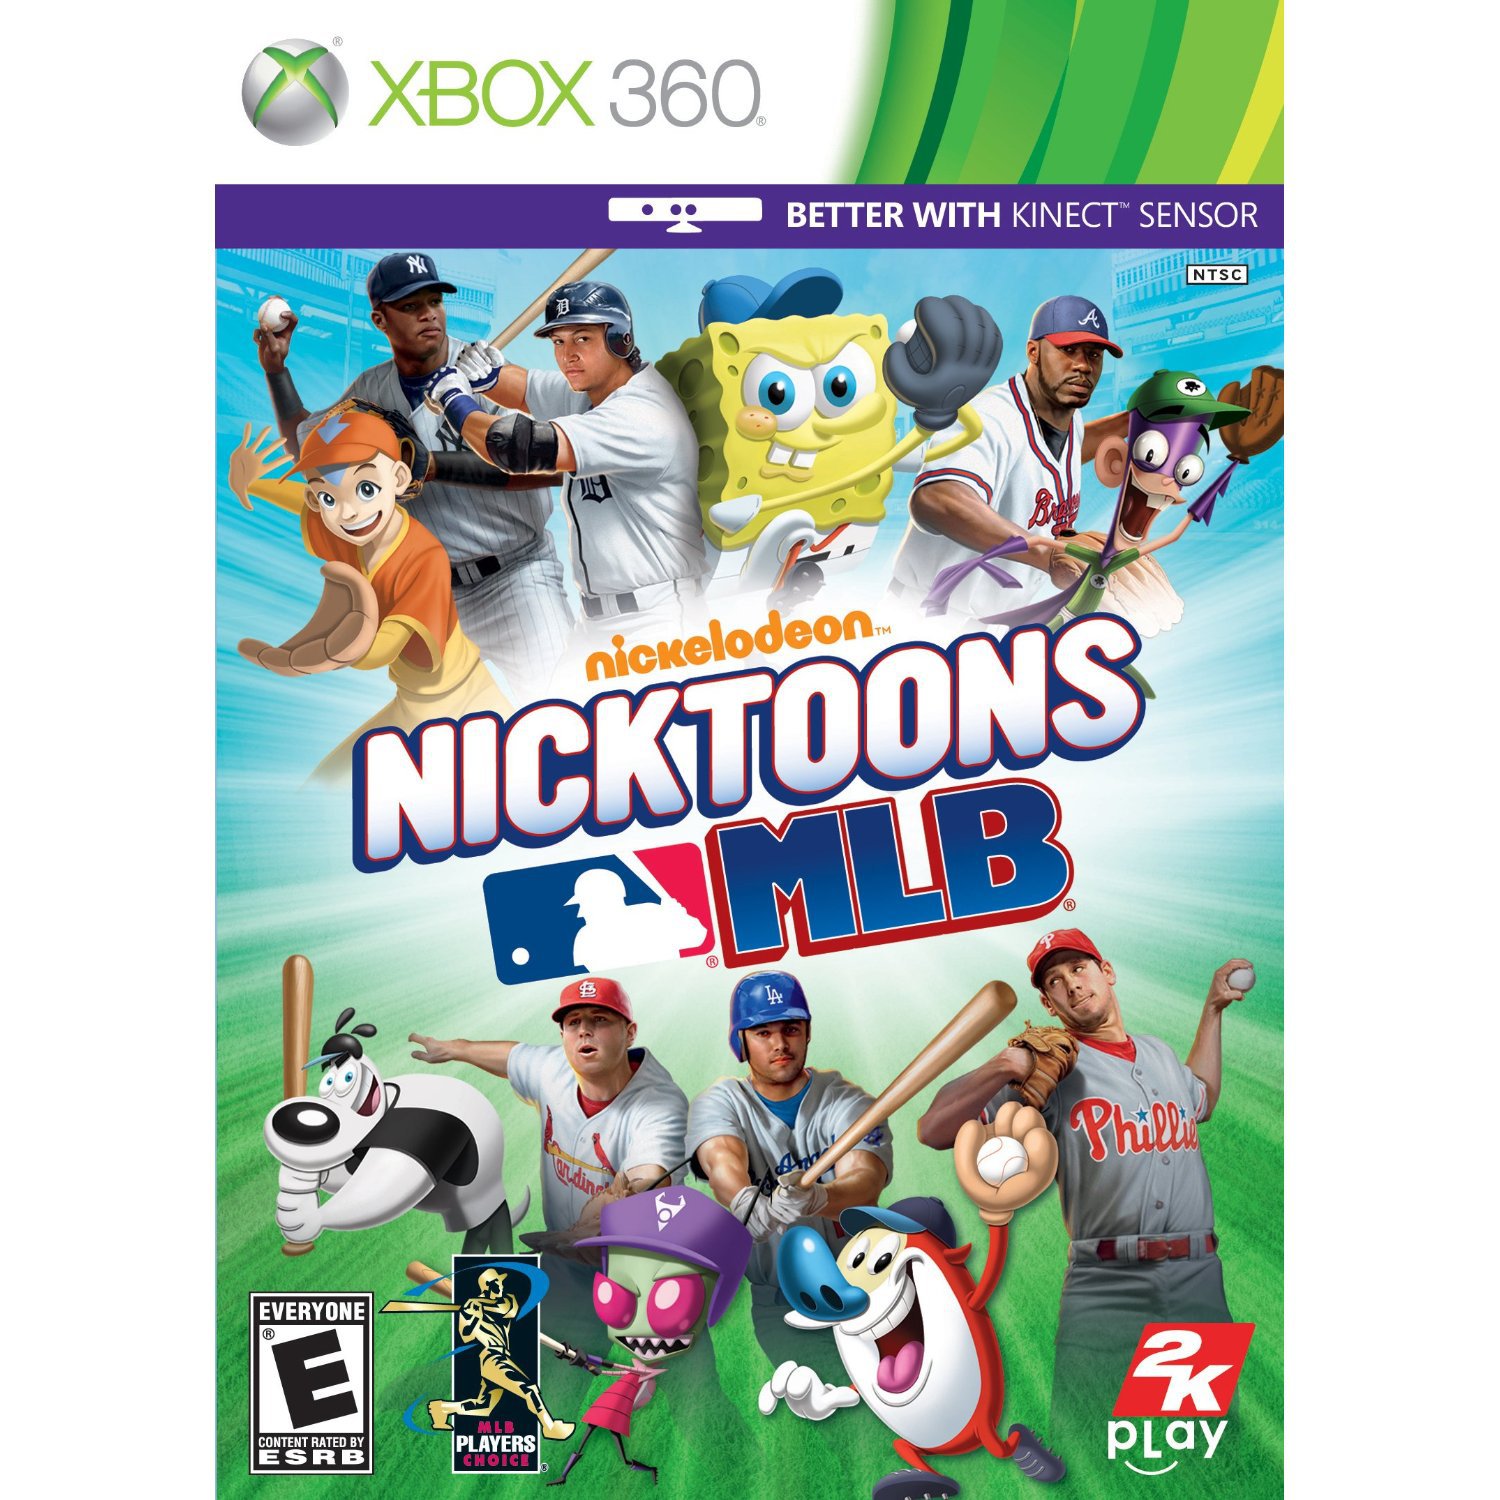 Nicktoons: MLB